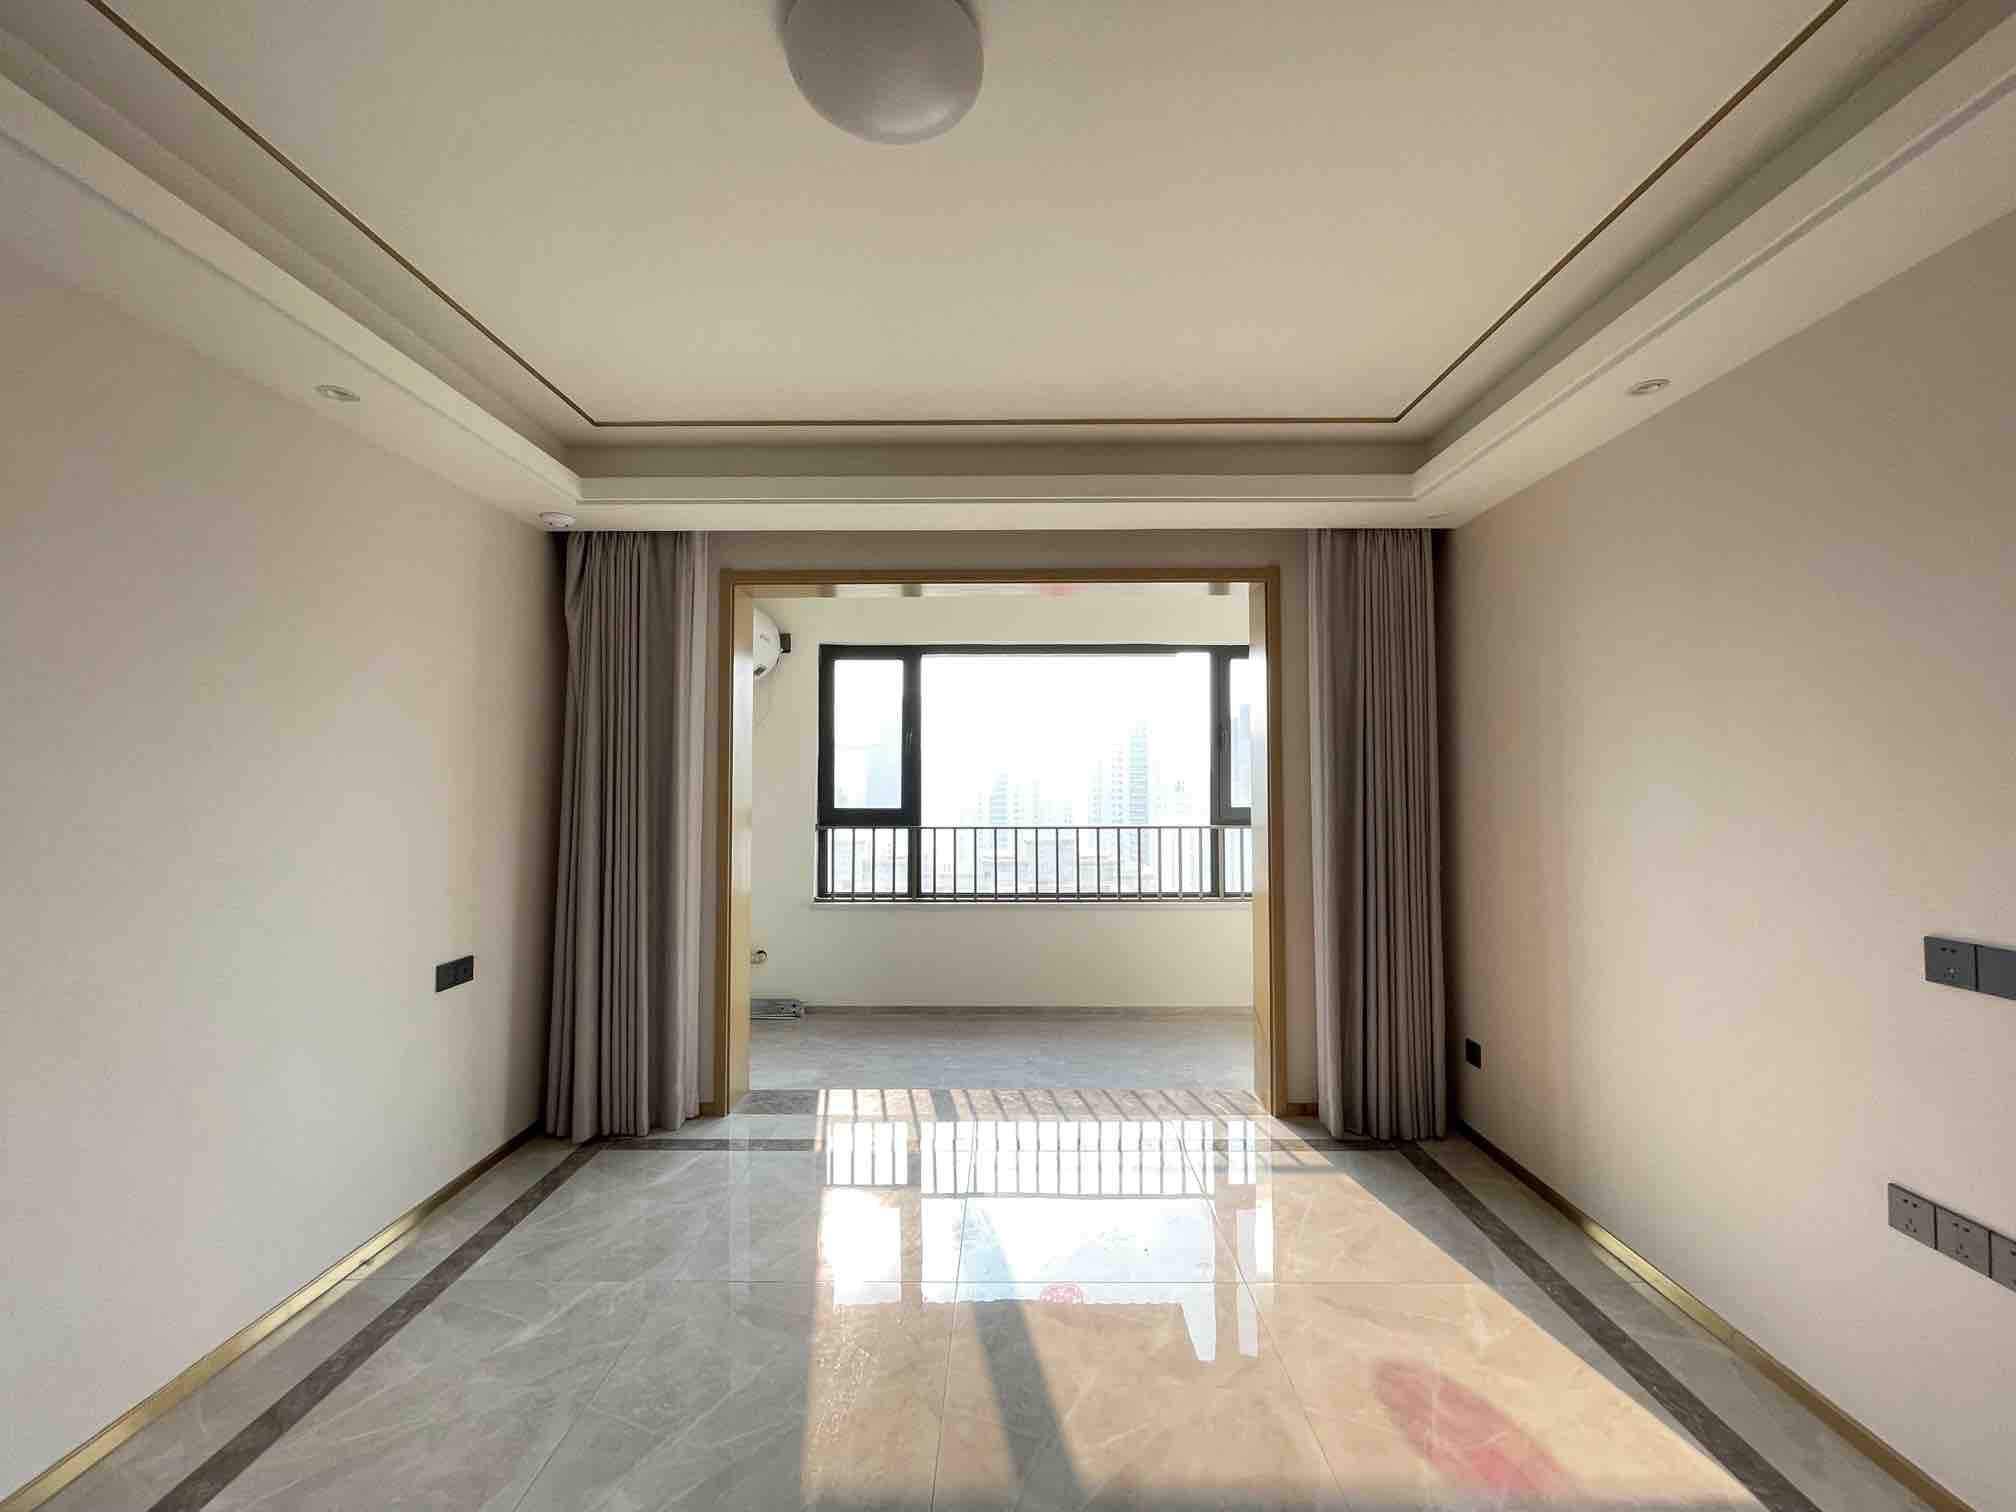 银丰玖玺城,3室2厅,360万,不满两年,中装,有电梯